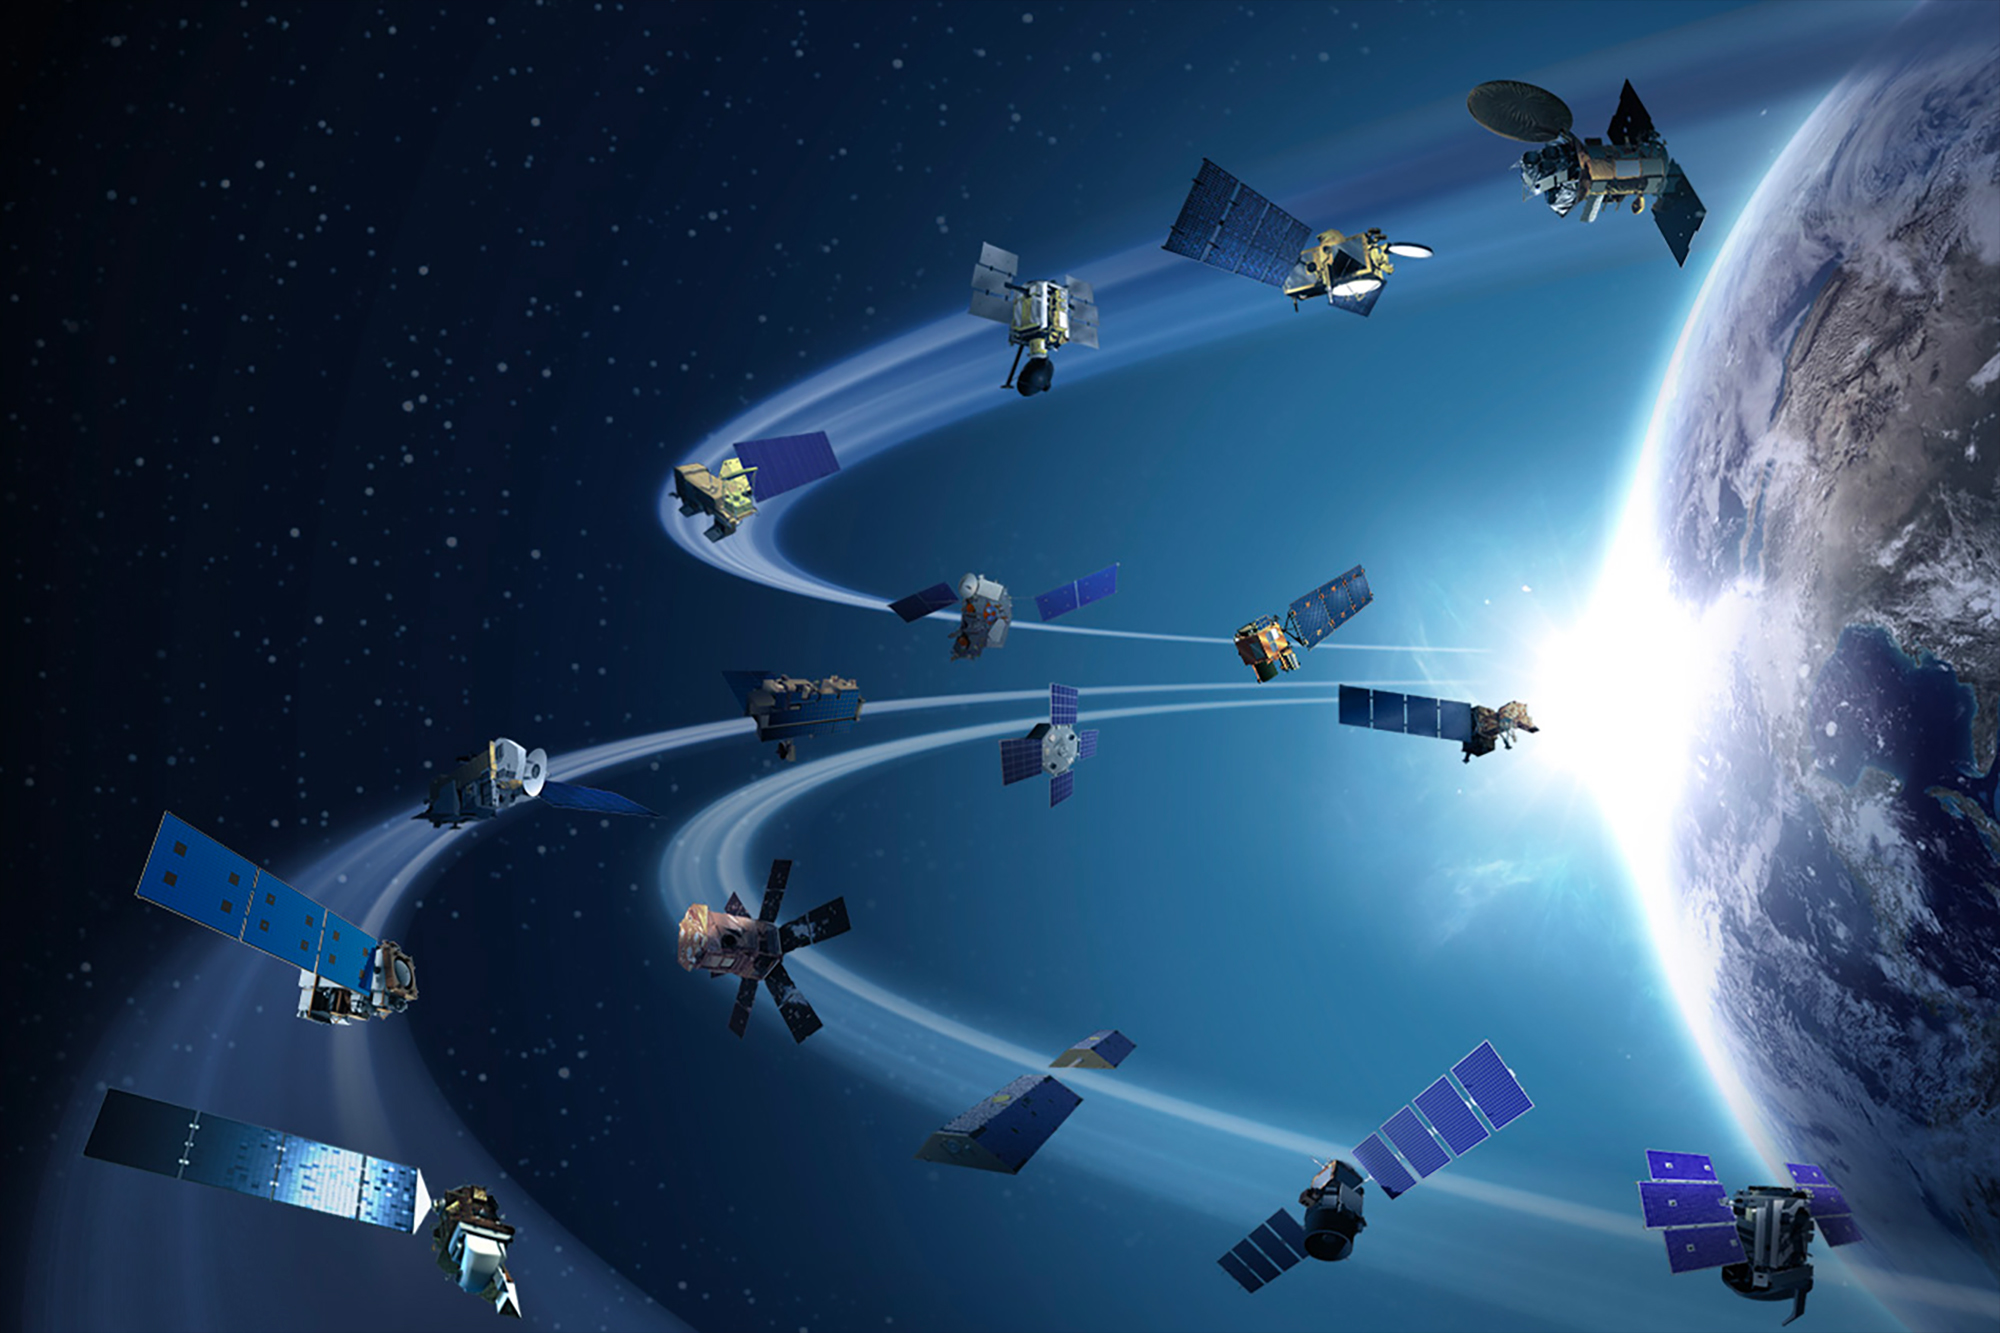 Des orbites de plus en plus occupées, voire encombrées, augmentent les risques de collision entre satellites des uns et des autres. © Nasa